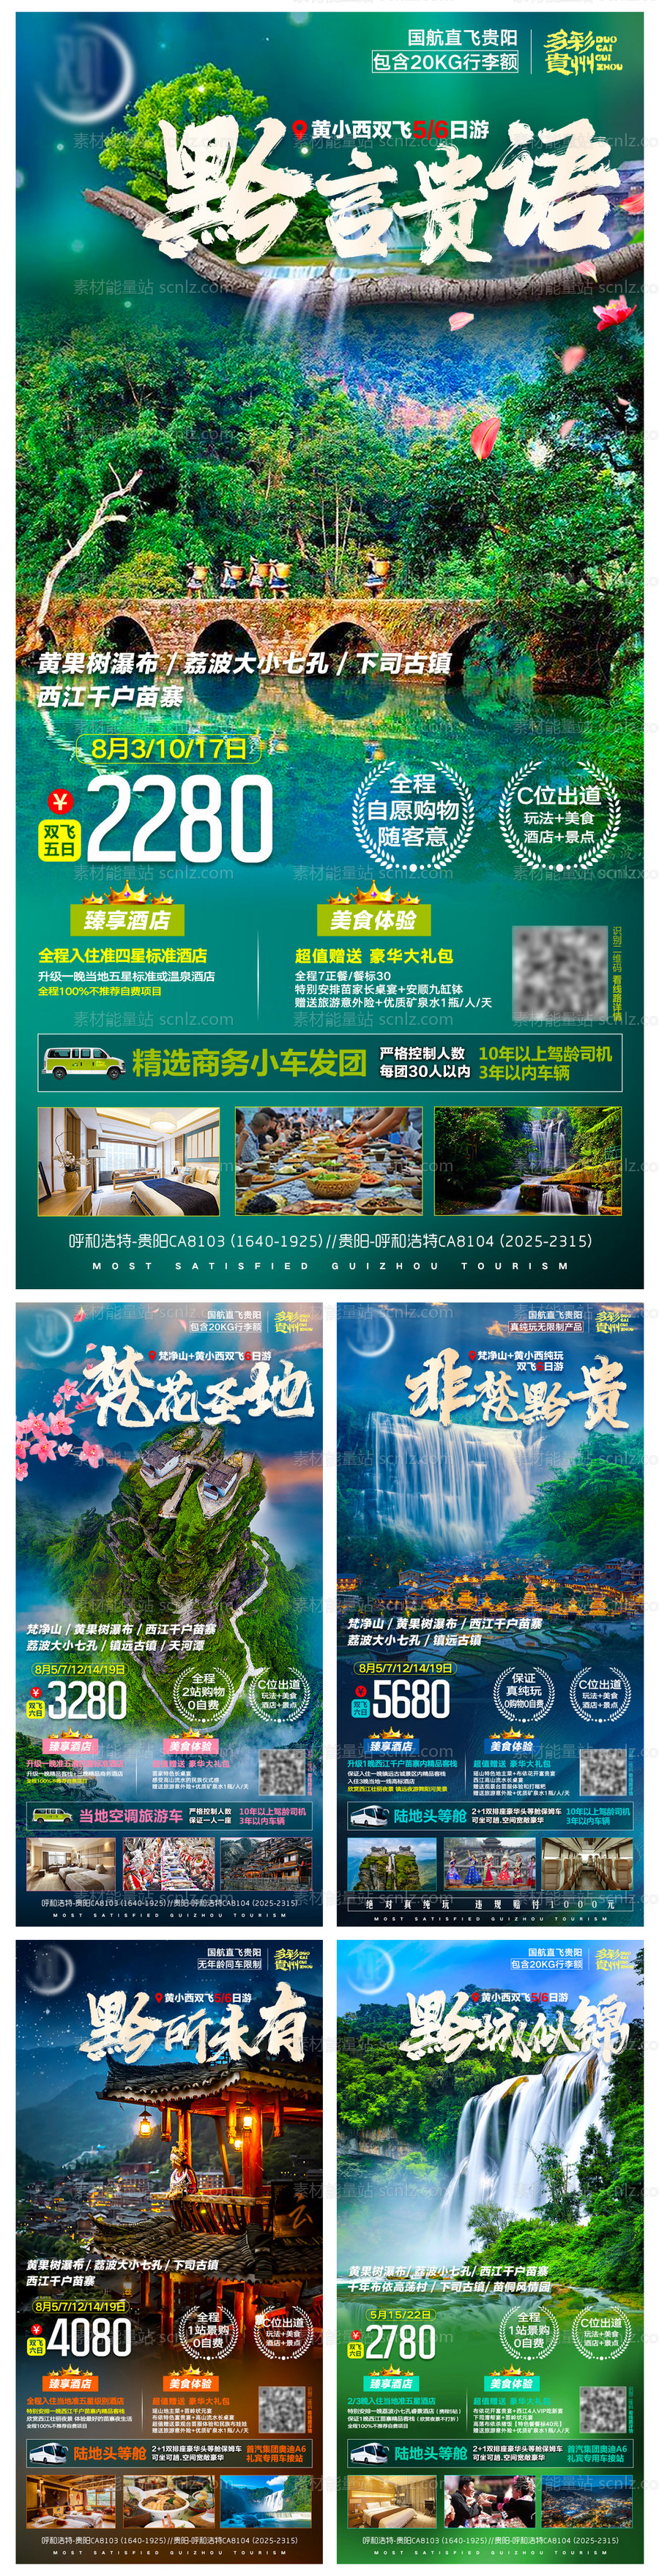 素材能量站-贵州旅游系列海报